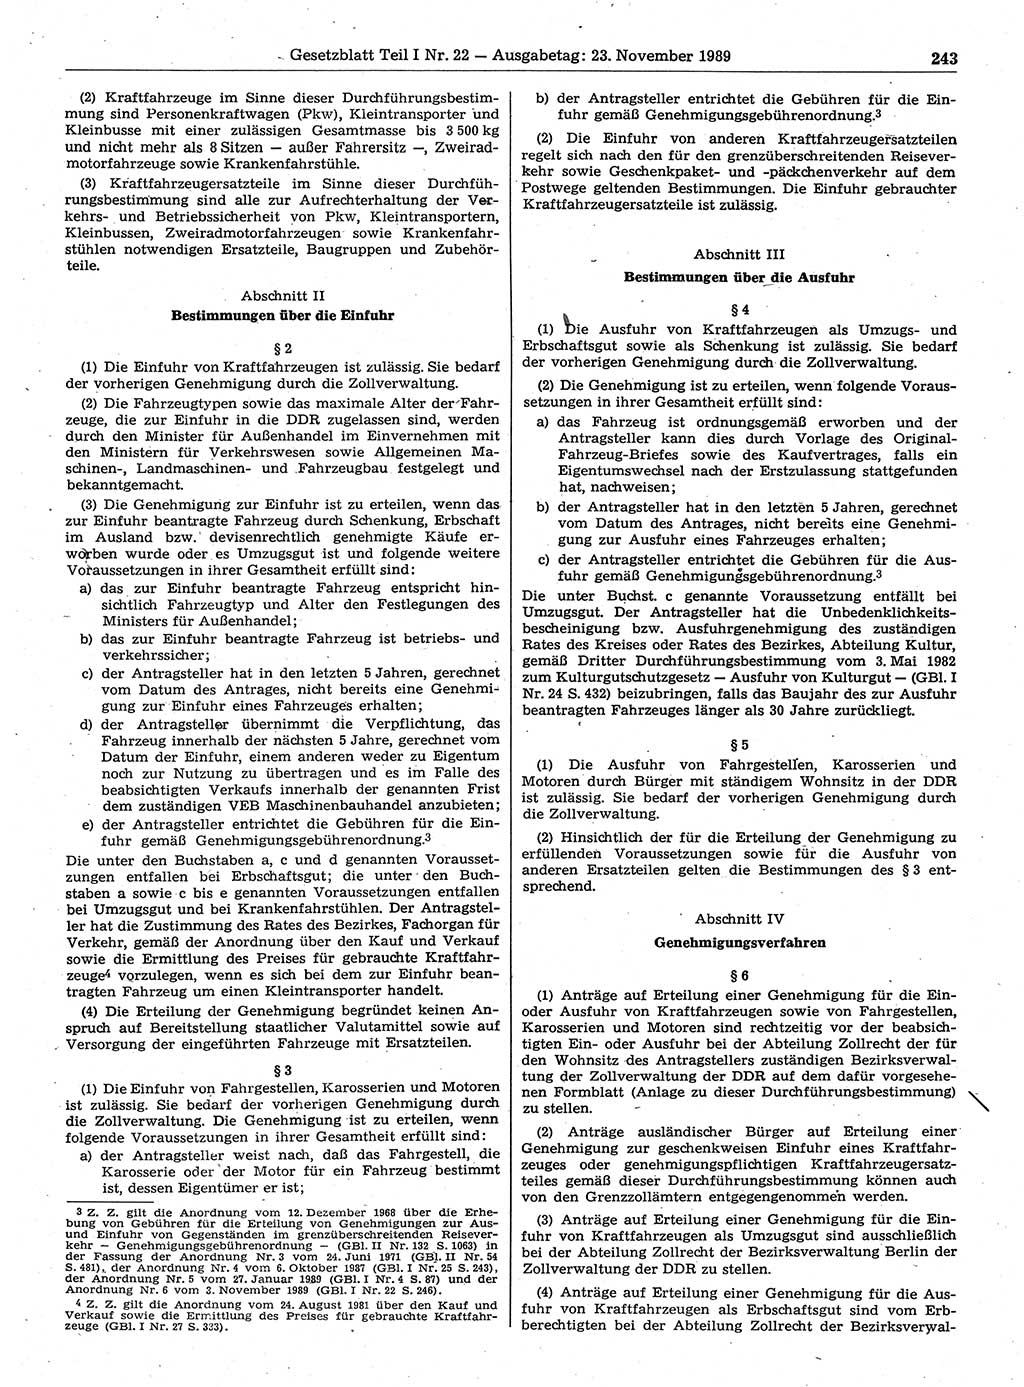 Gesetzblatt (GBl.) der Deutschen Demokratischen Republik (DDR) Teil Ⅰ 1989, Seite 243 (GBl. DDR Ⅰ 1989, S. 243)